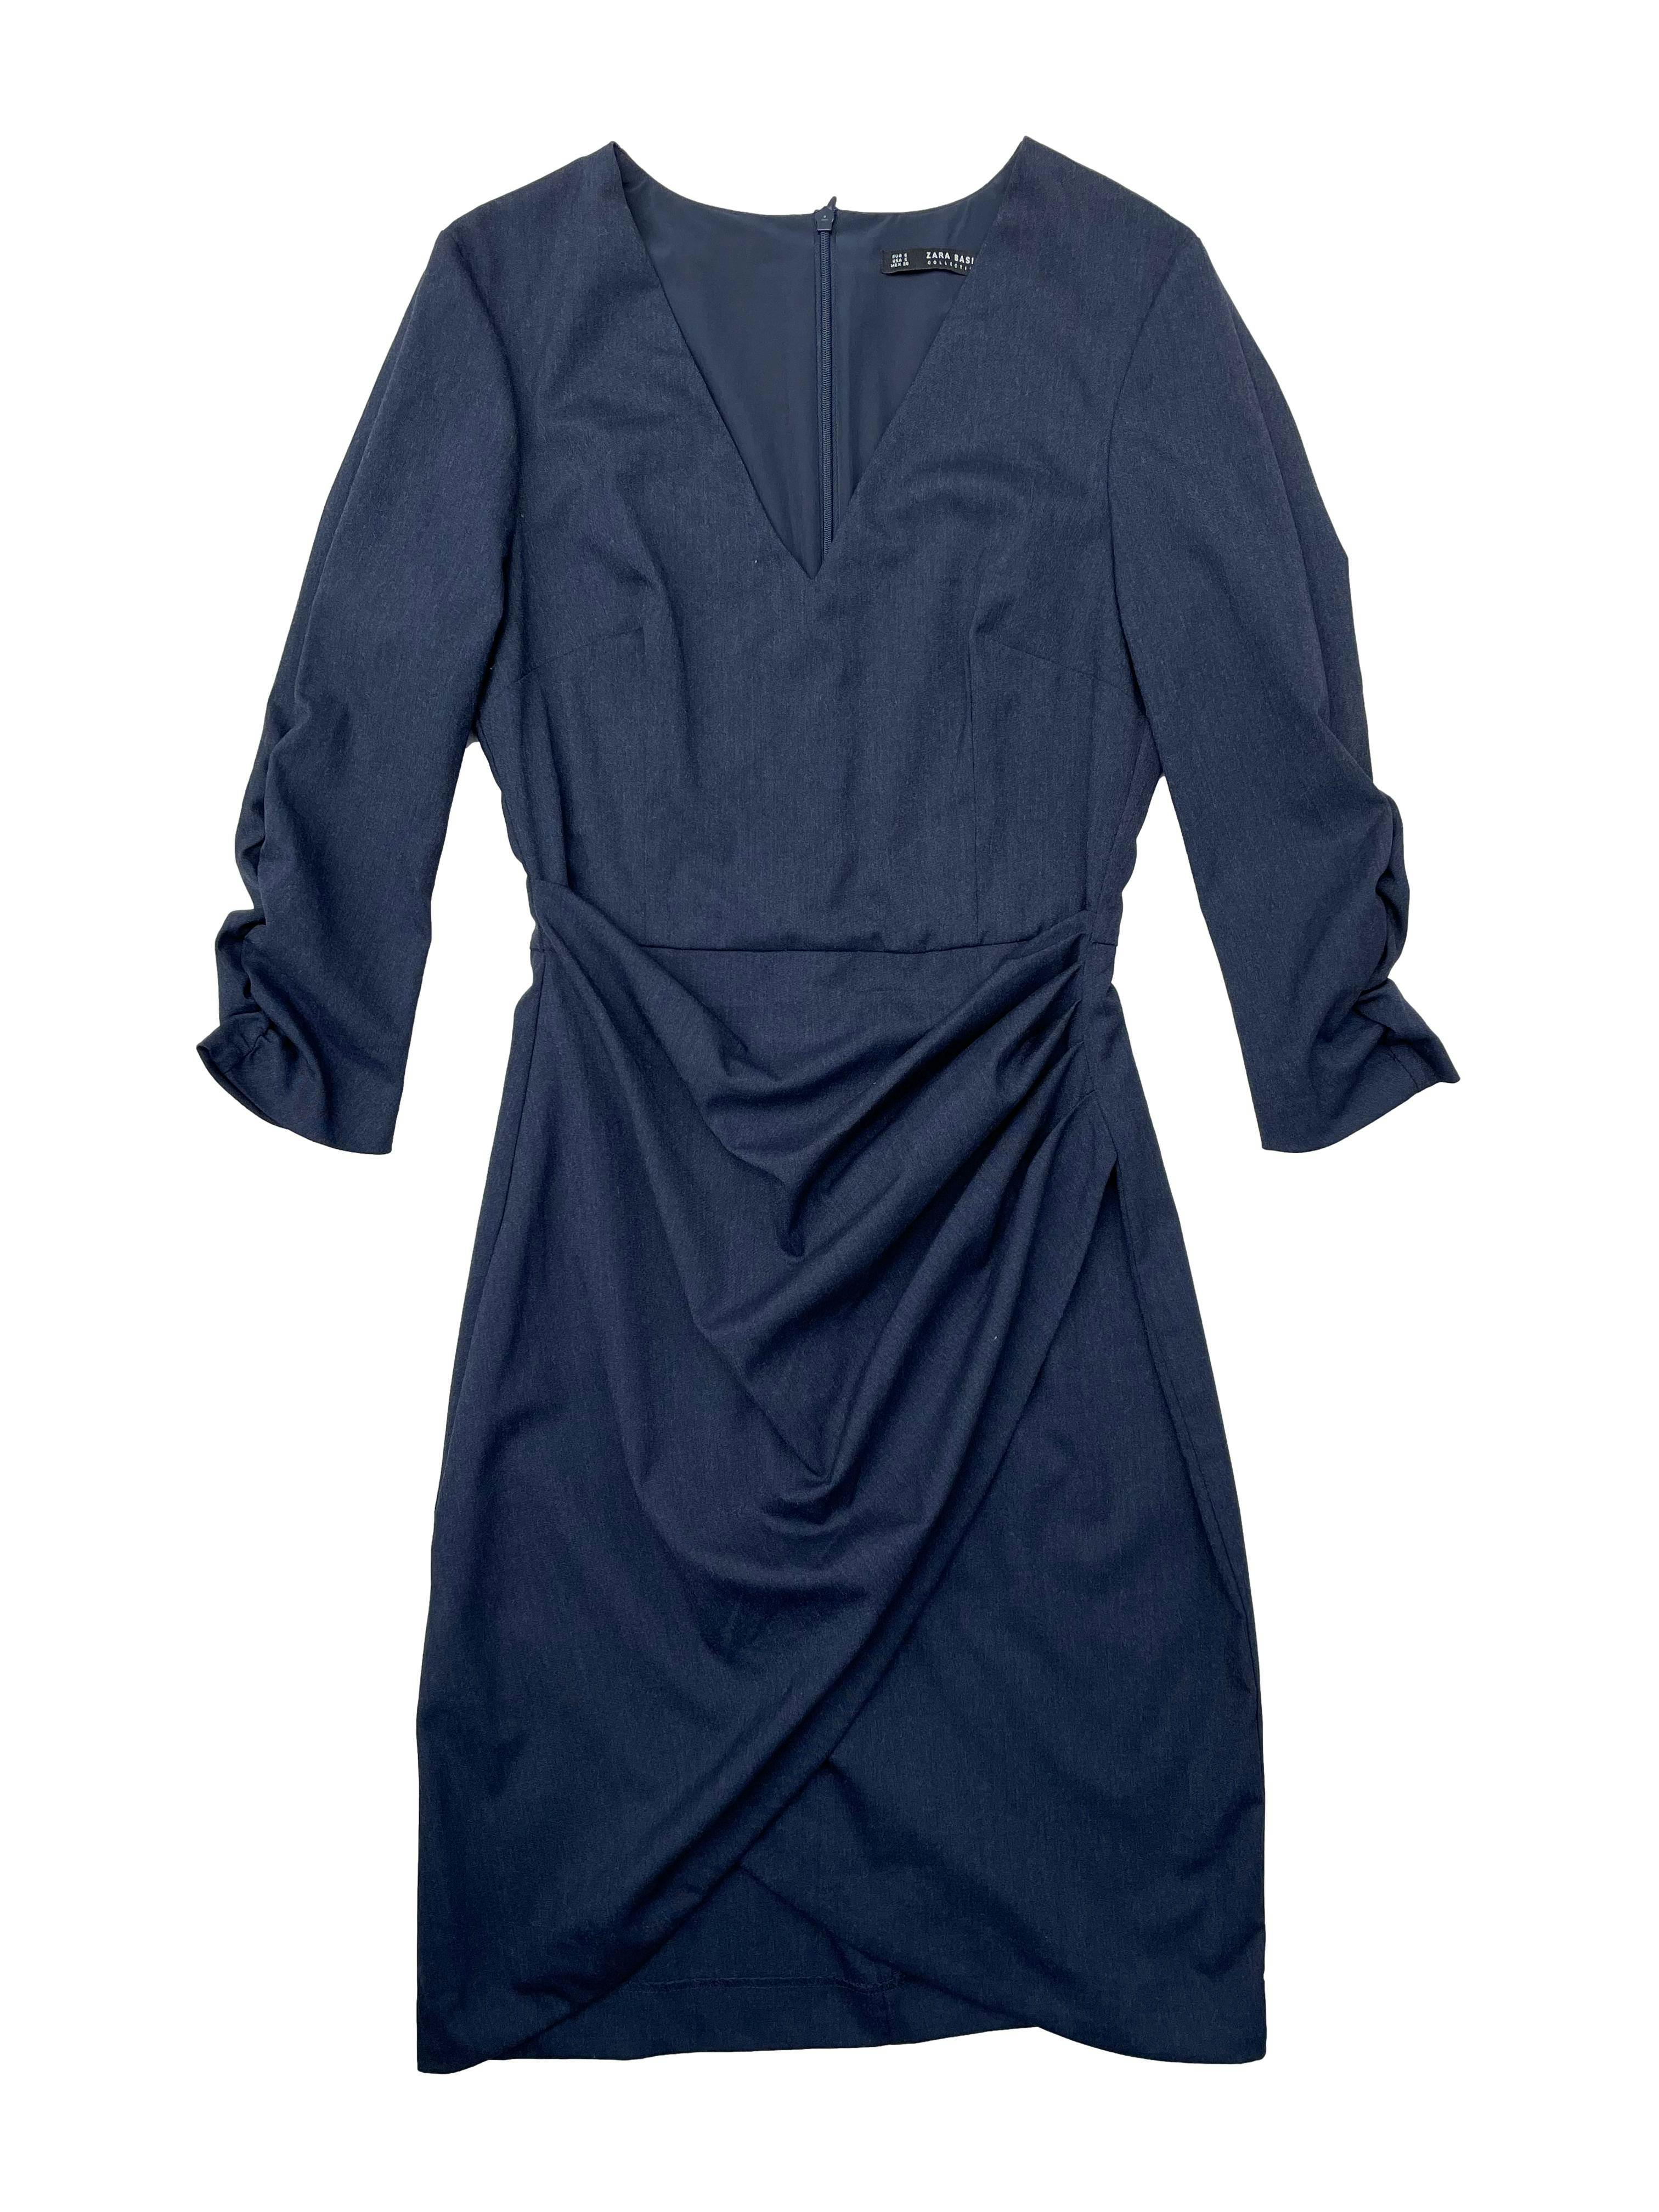 Vestido plomo Zara de sastre con forro, pinzas, corte en cintura, recogido lateral y en mangas, cierre posterior invisible. Busto 90cm, Largo 95cm.